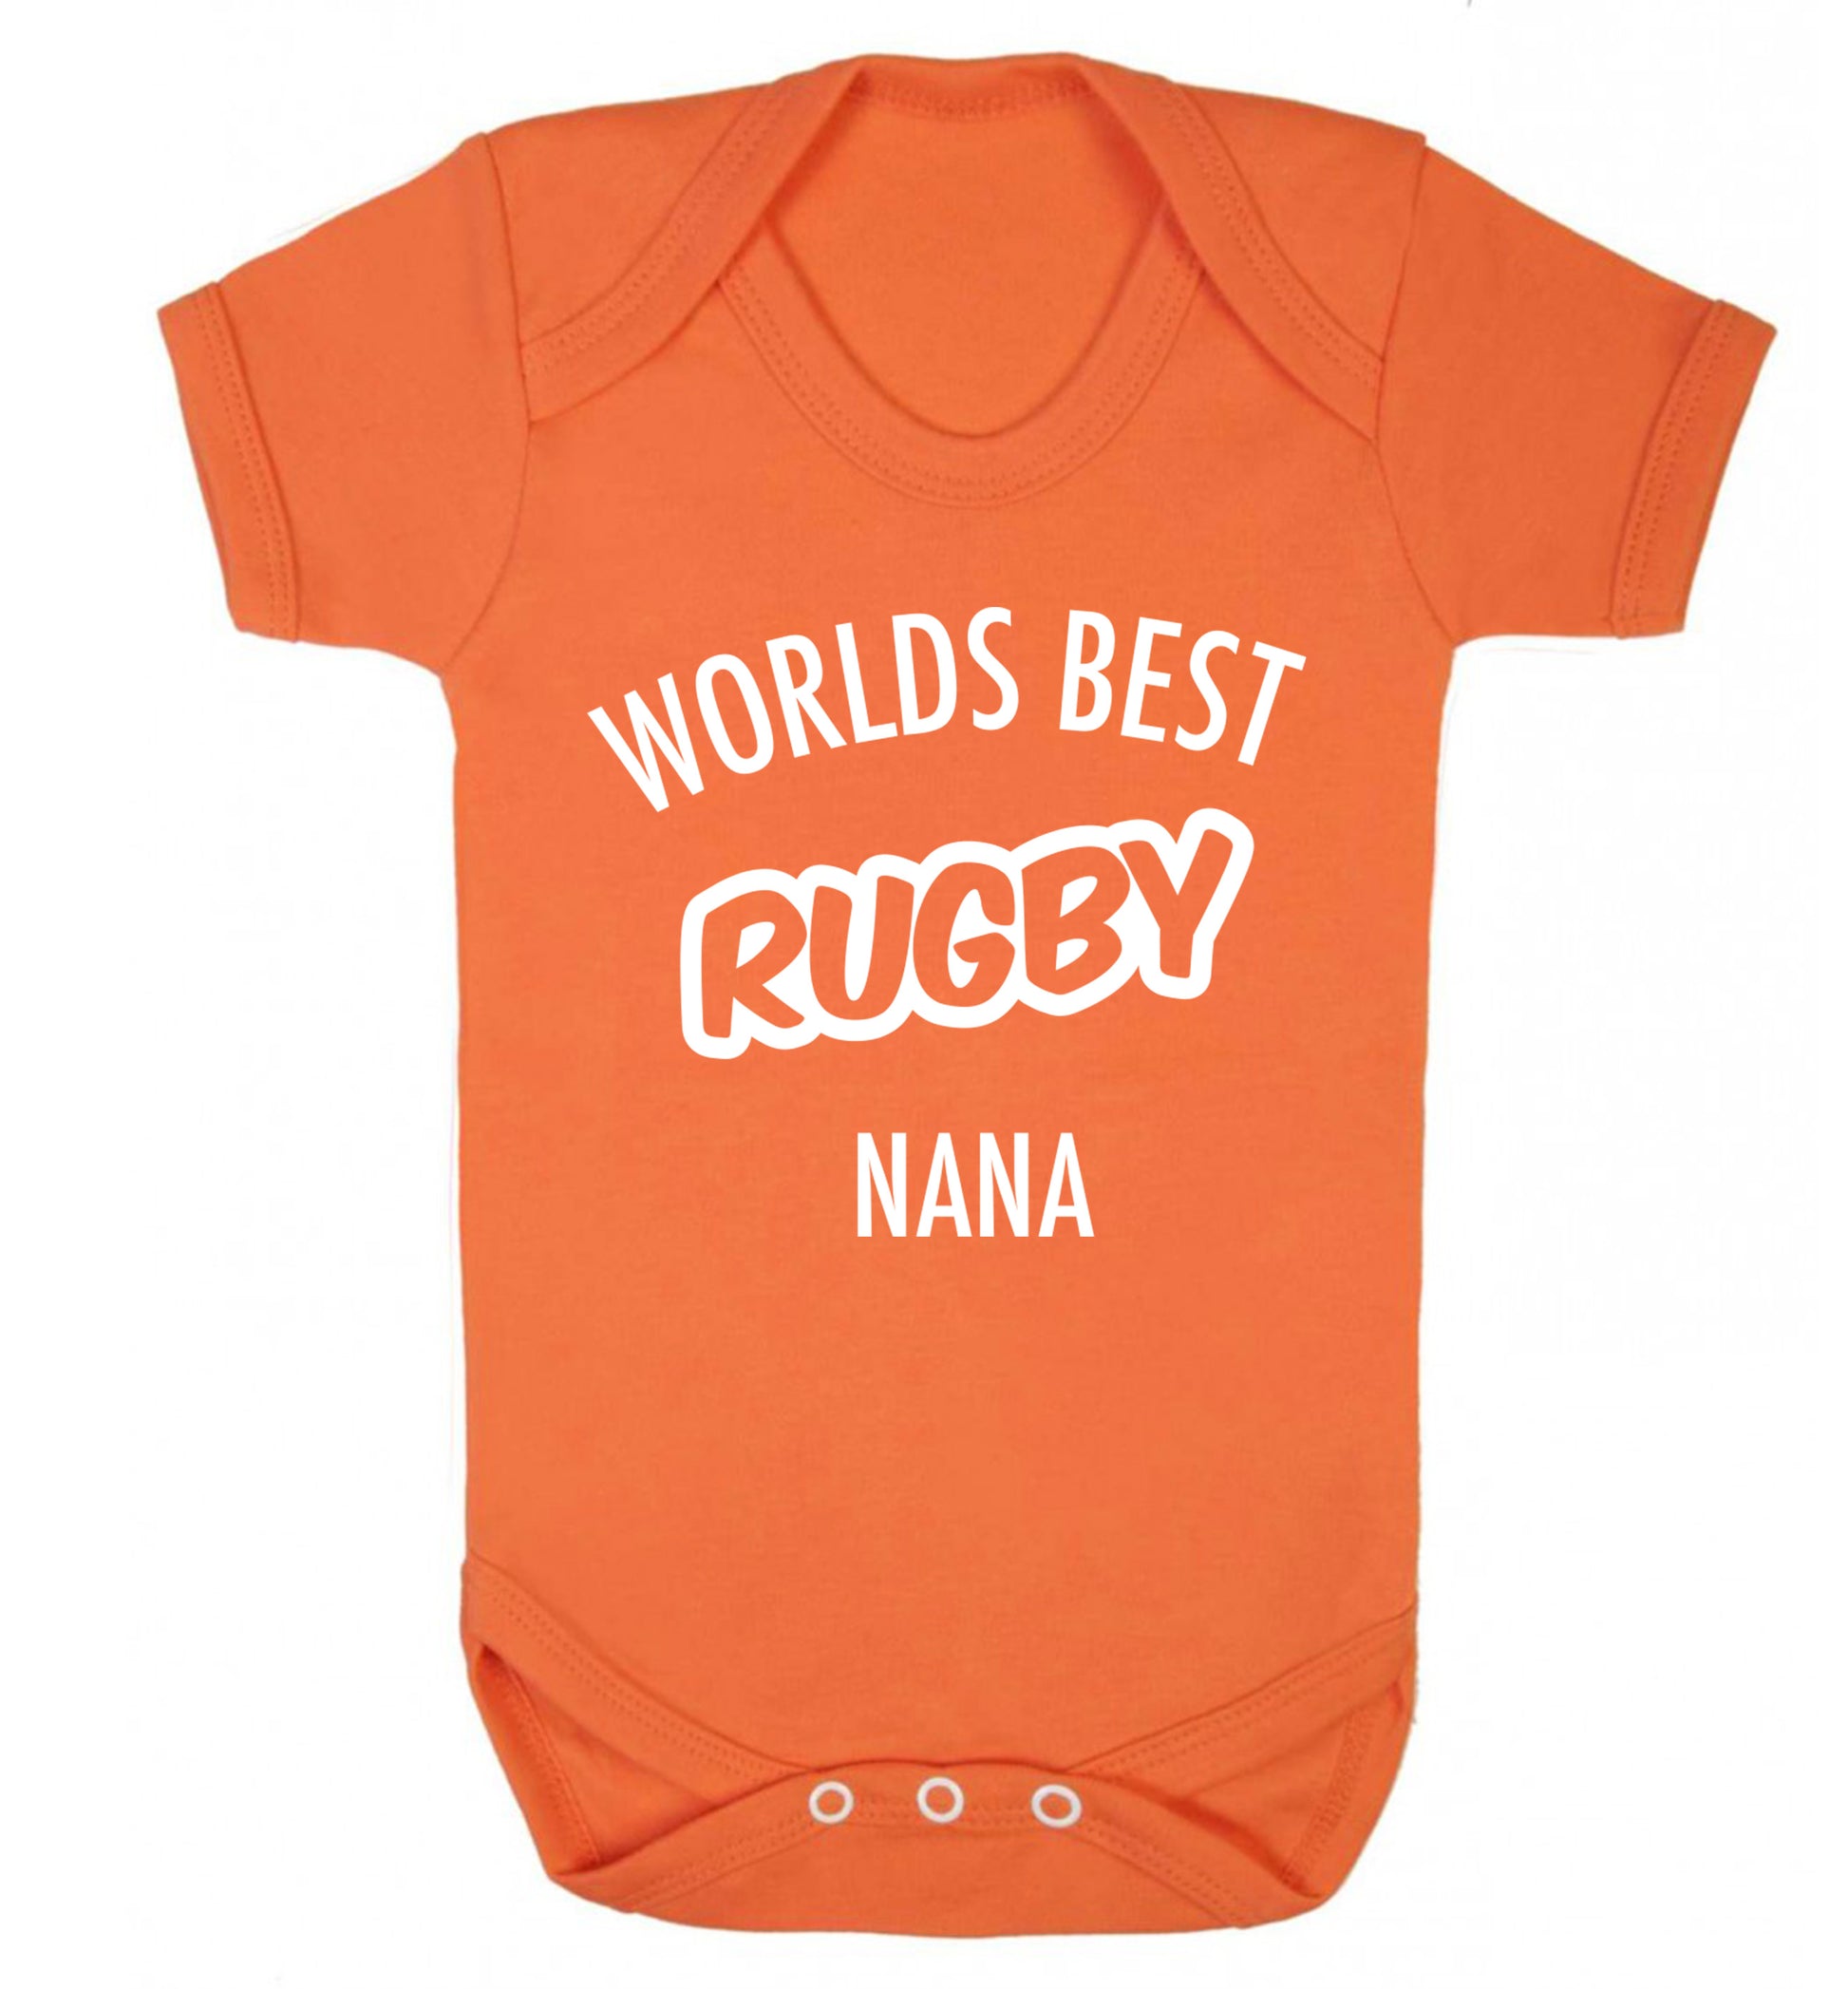 Worlds Best Rugby Grandma Baby Vest orange 18-24 months